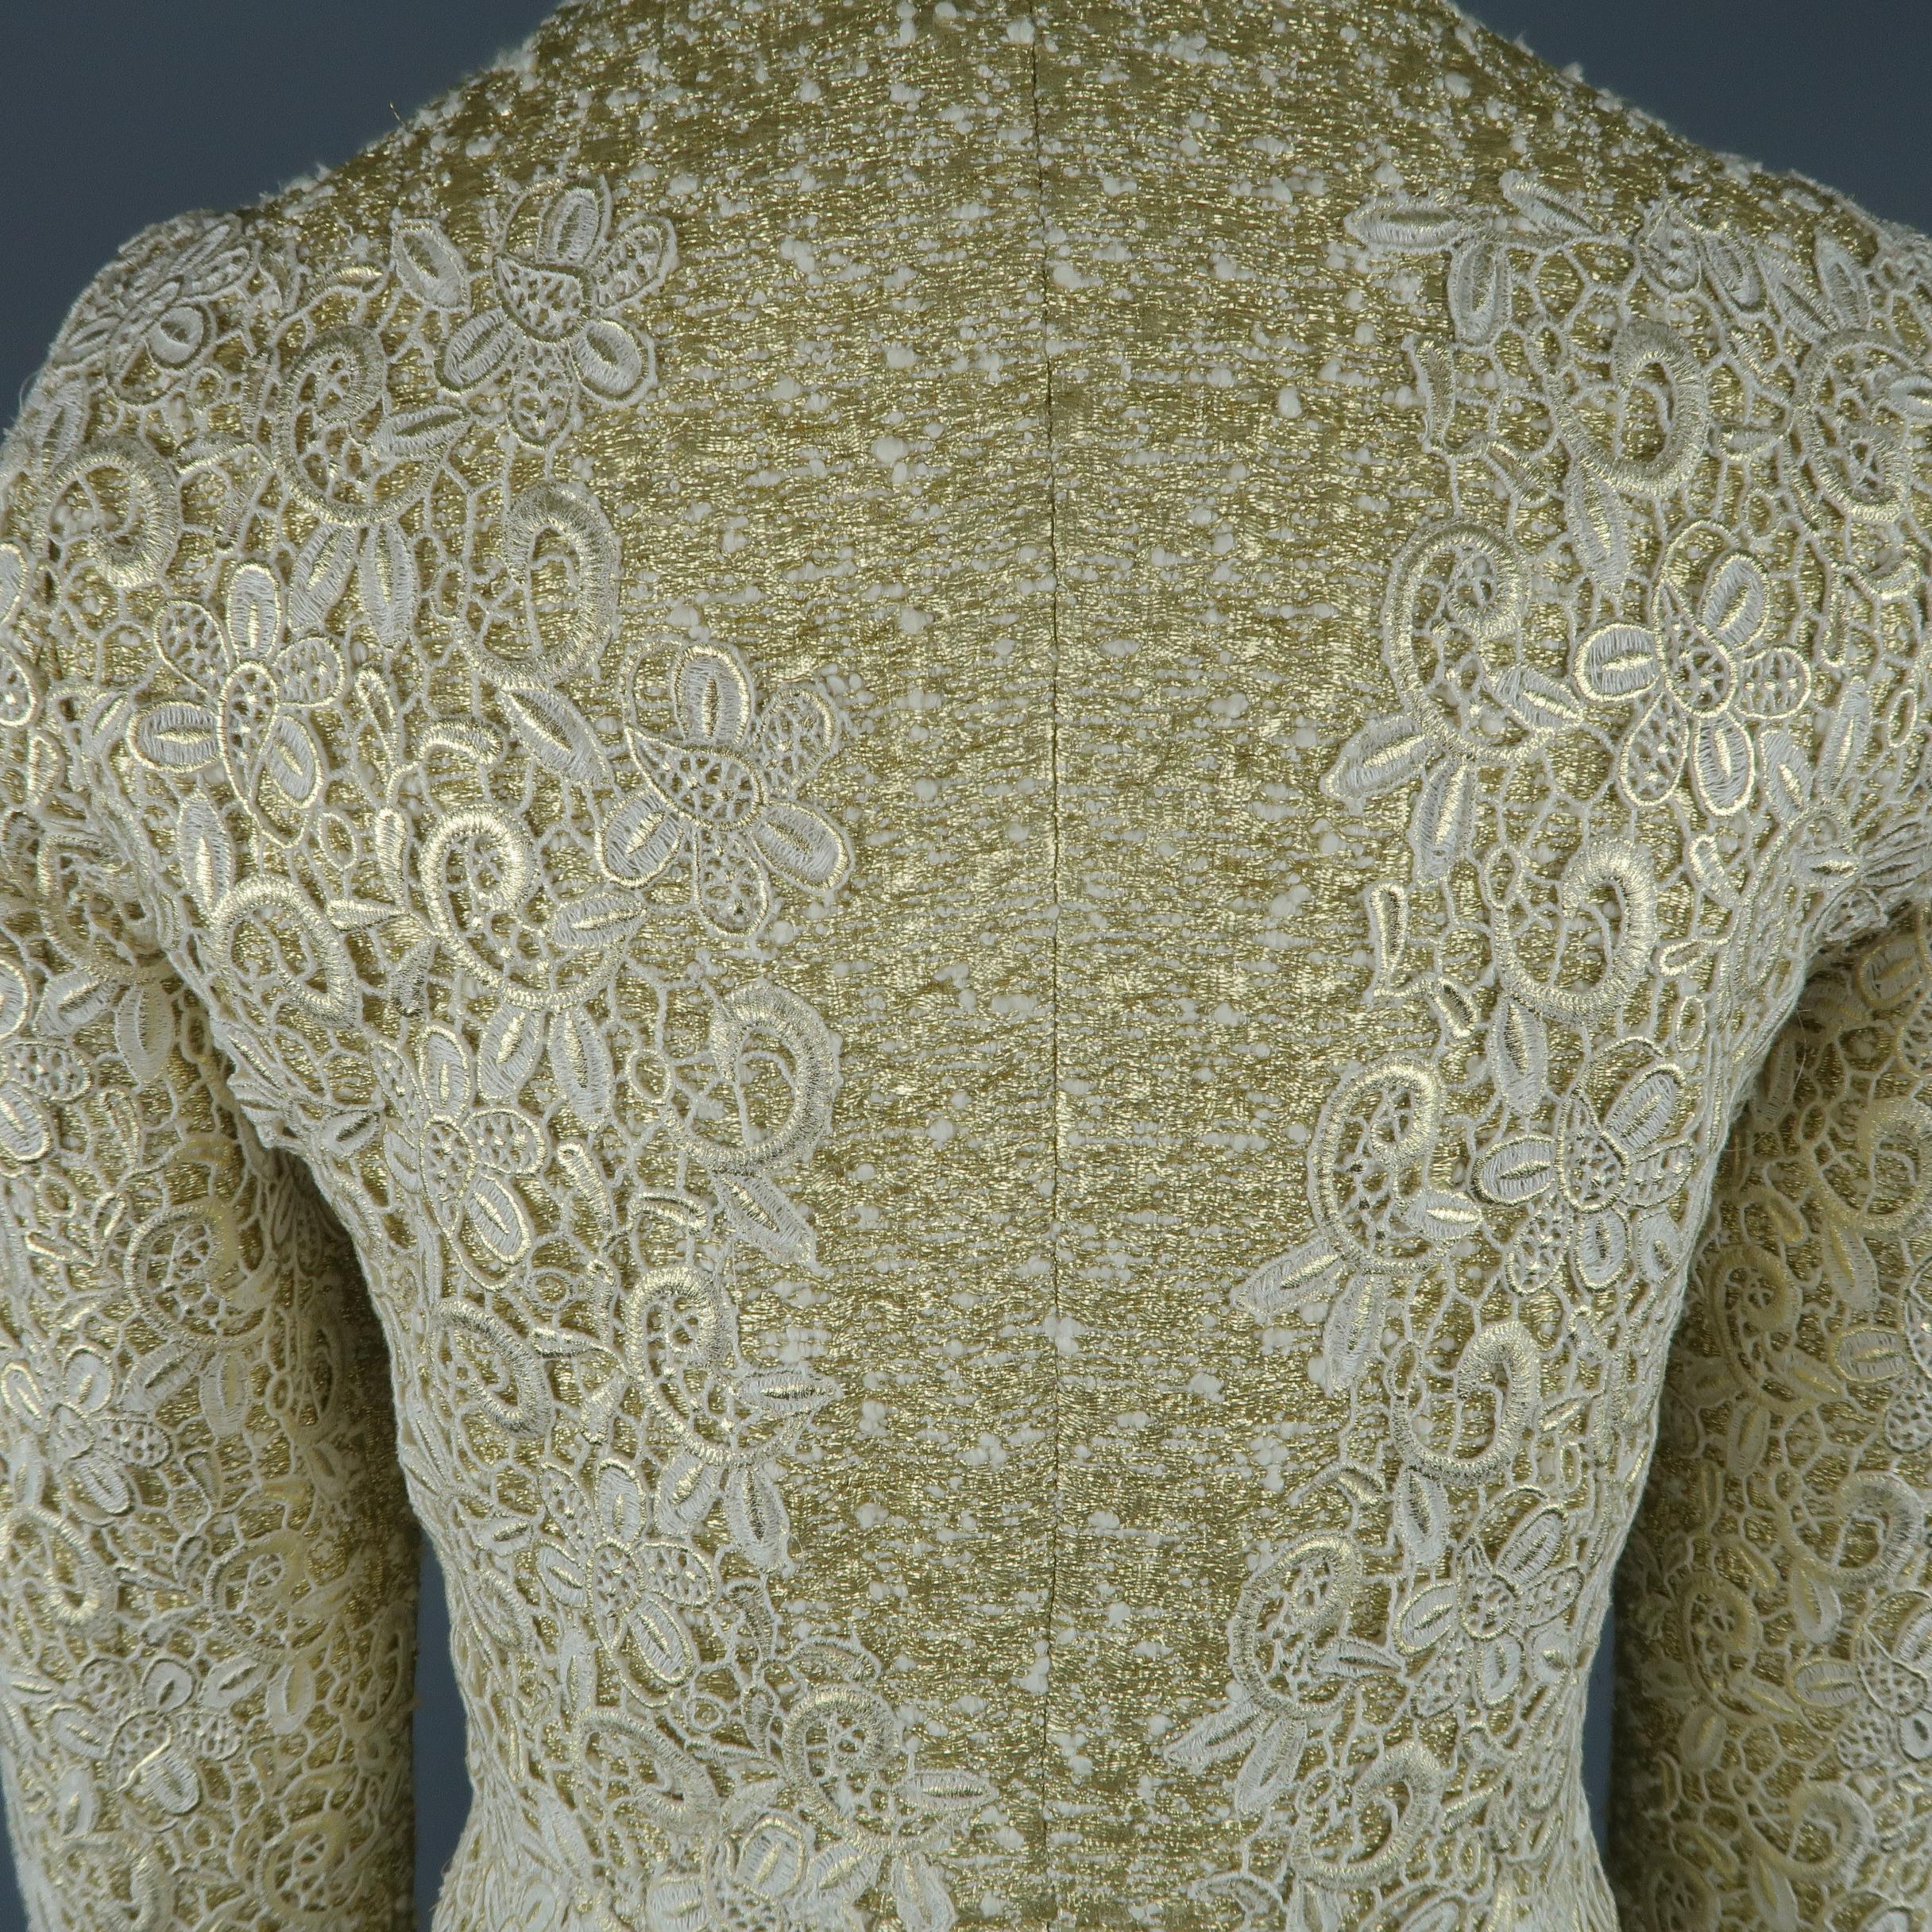 GIAMBATTISTA VALLI Metallic Gold Cotton / Silk Lace Overlay Cocktail Coat-Dress 4